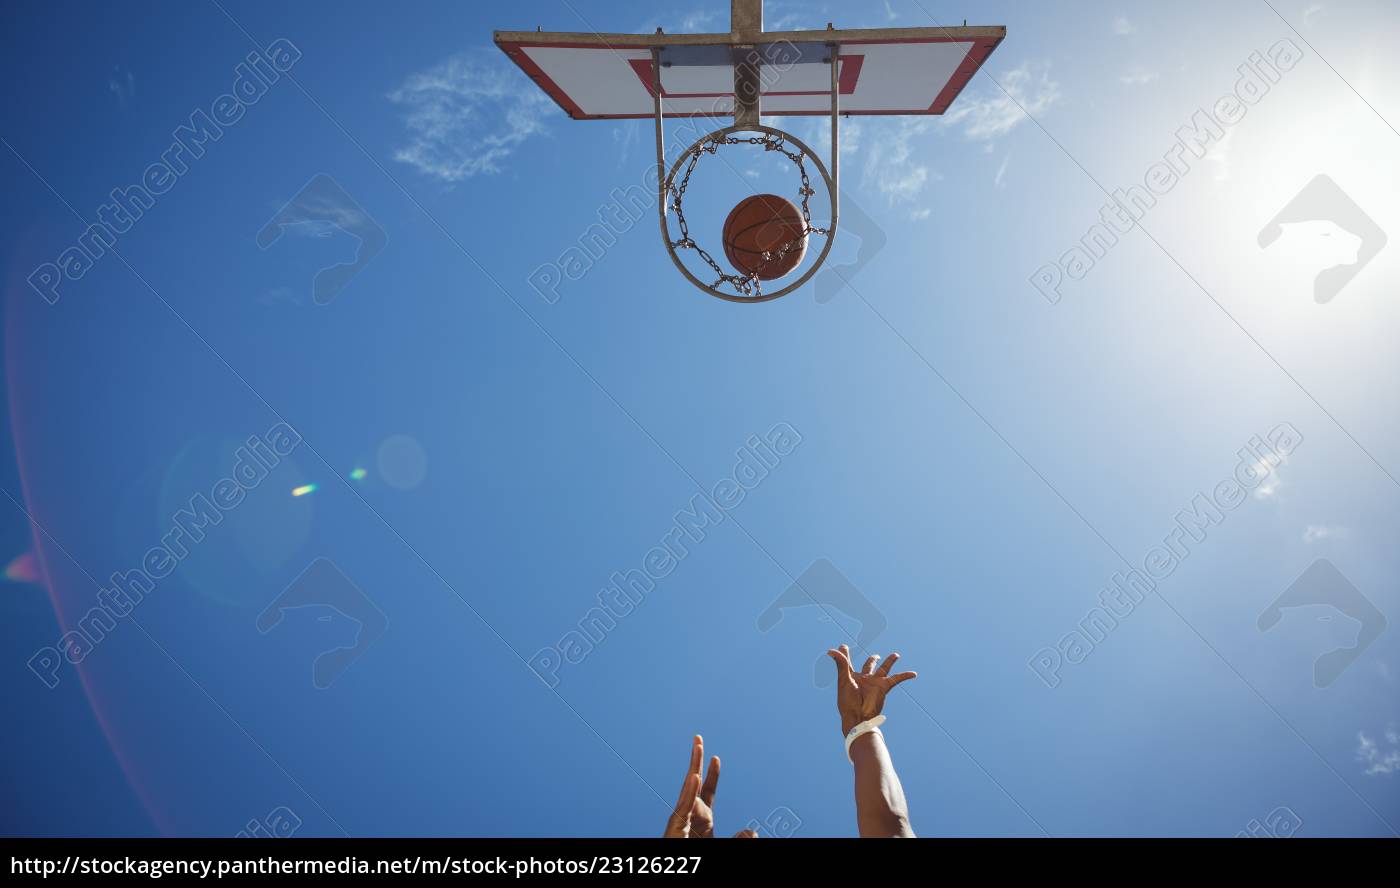 Pessoas jogando basquete